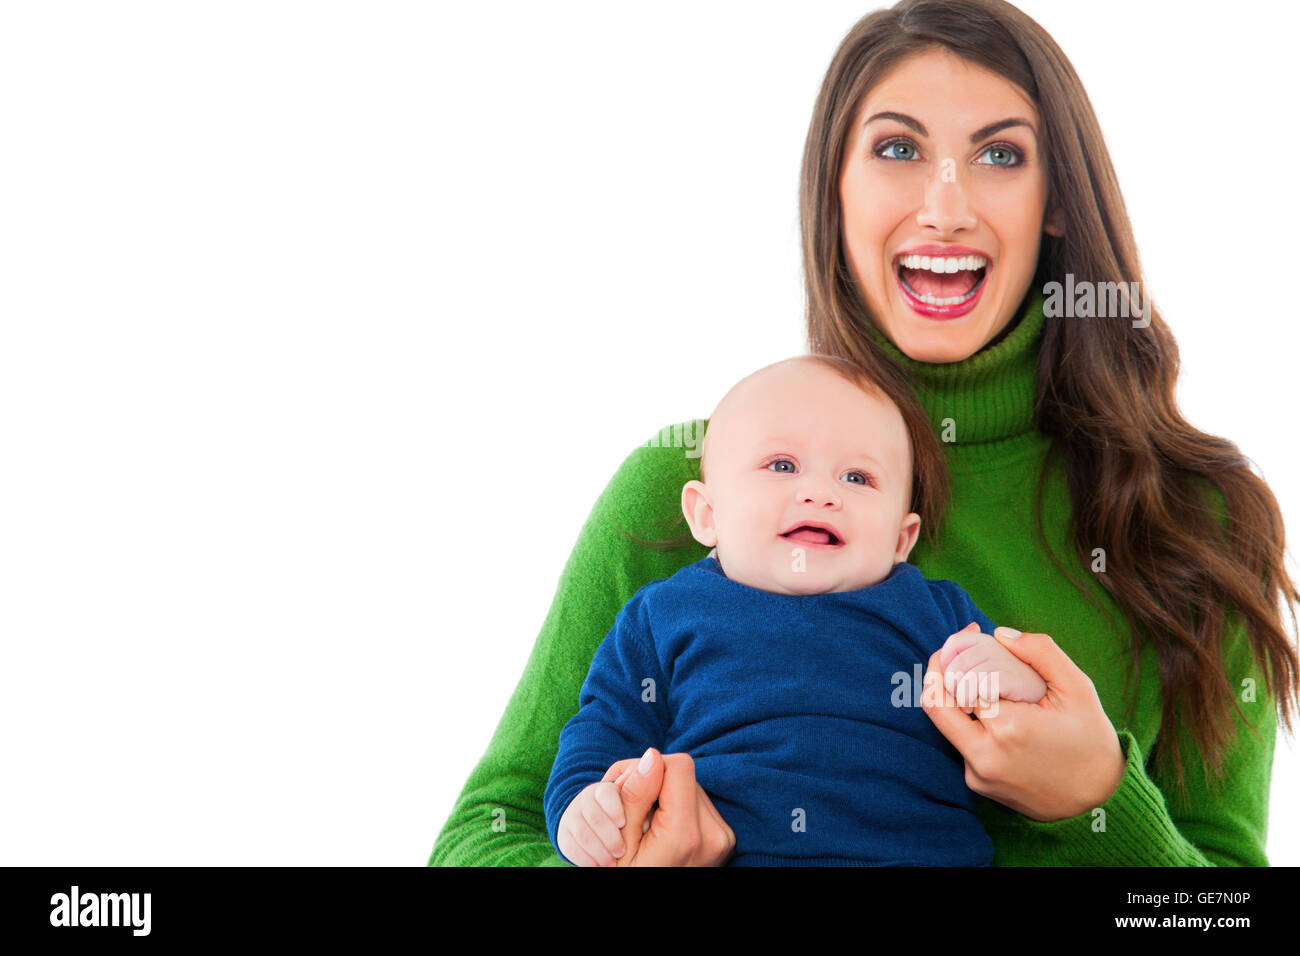 Une photo de cheerful woman with baby boy. La mère et le fils sont heureux de porter l'emploi temporaire. Les dépenses sont de temps de loisirs plus isolés Banque D'Images